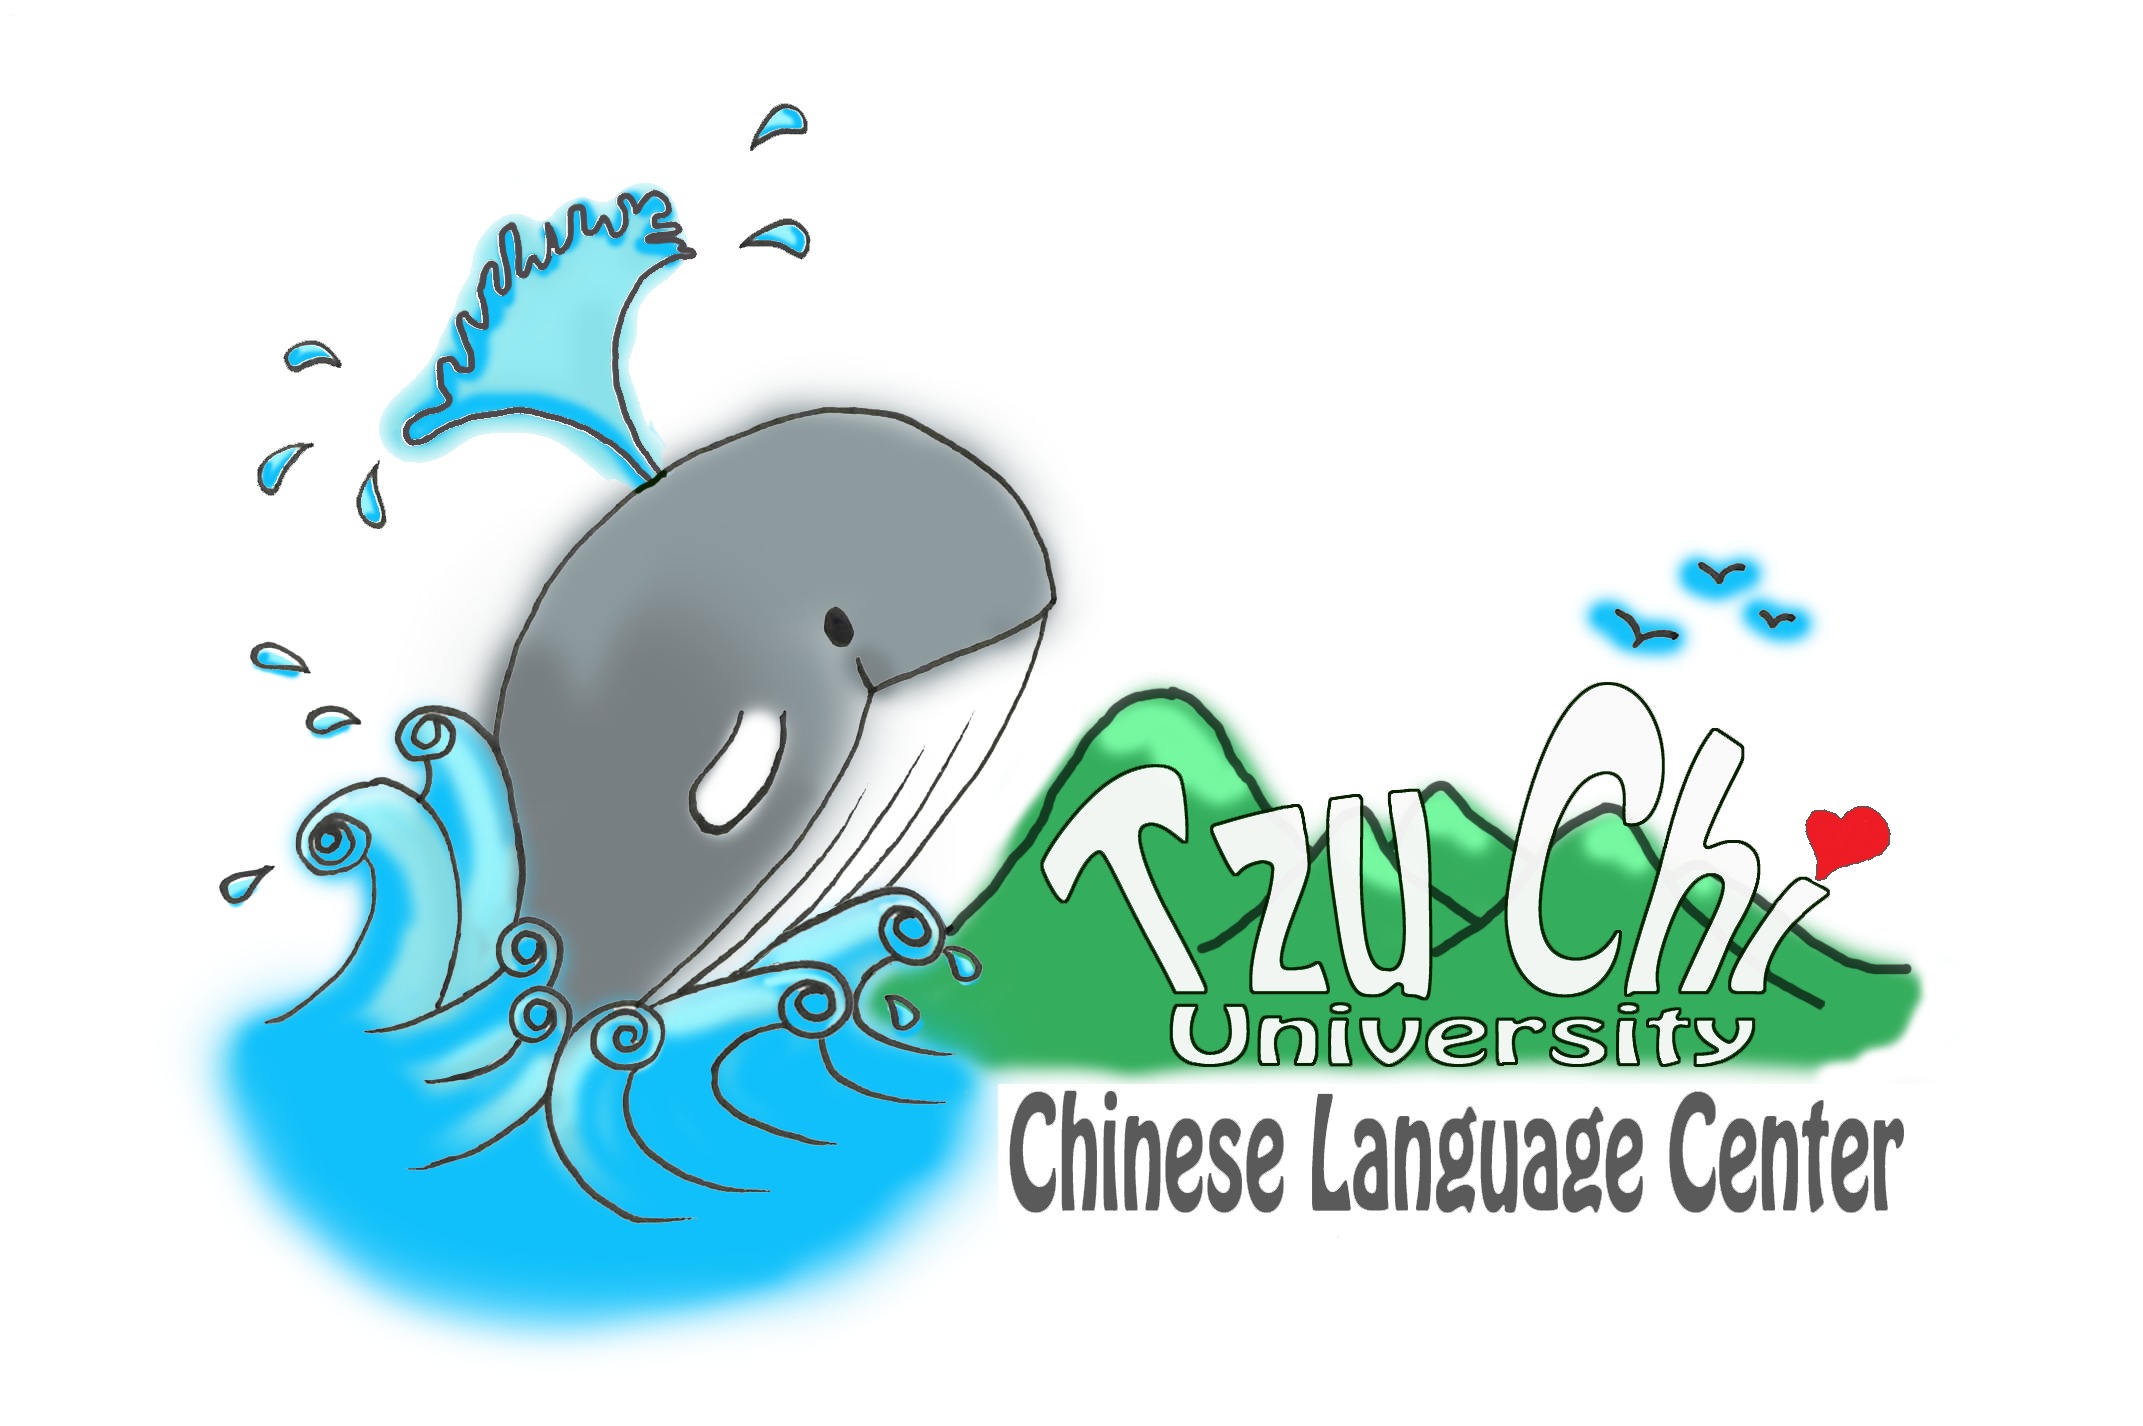 Chinese Language Center of Tzu Chi University